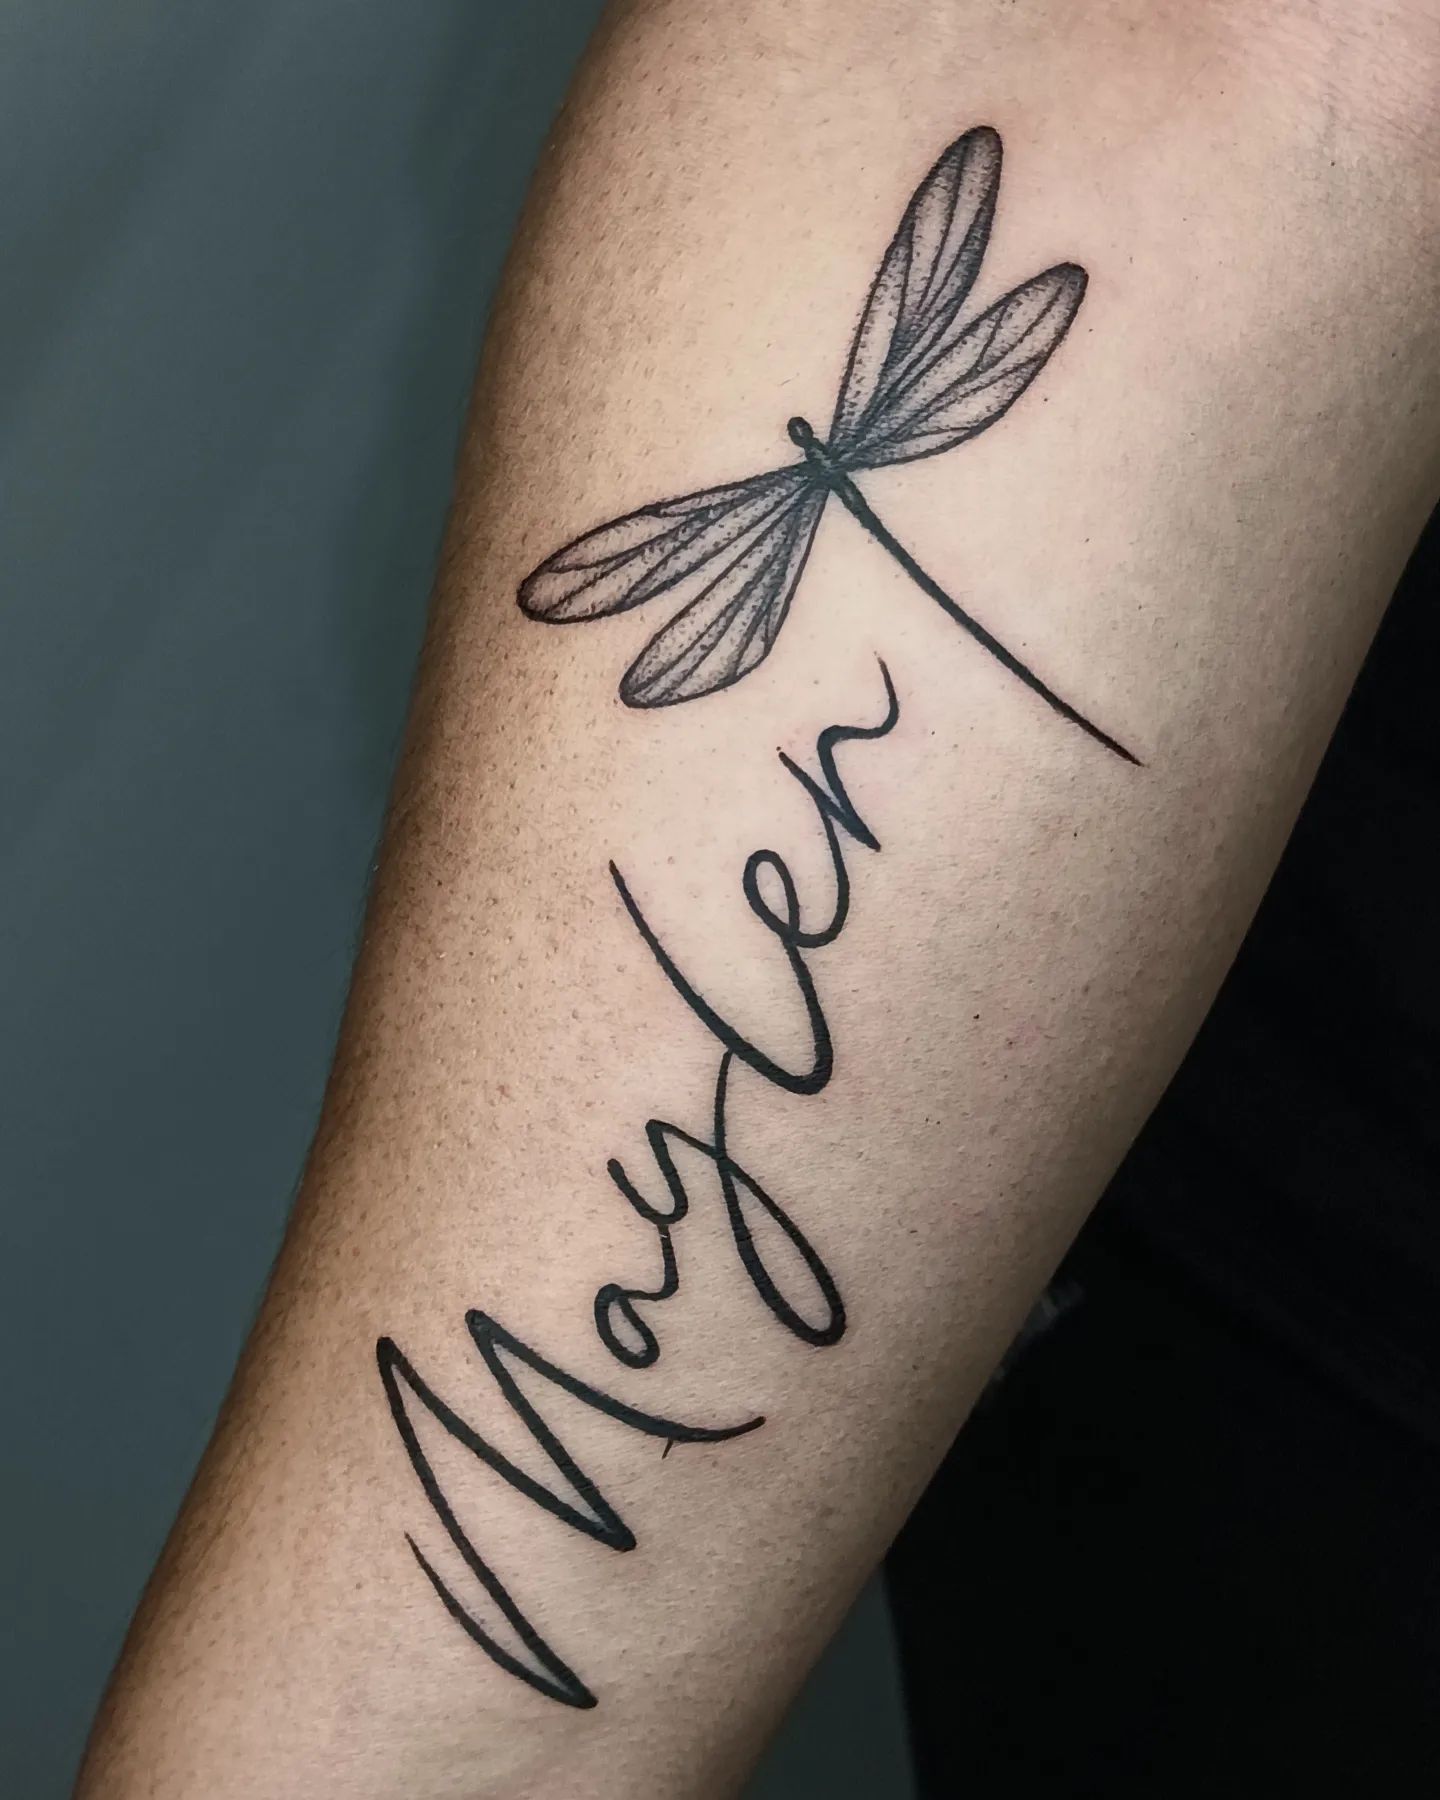 Tatuaje de libélula con impresión de nombre.